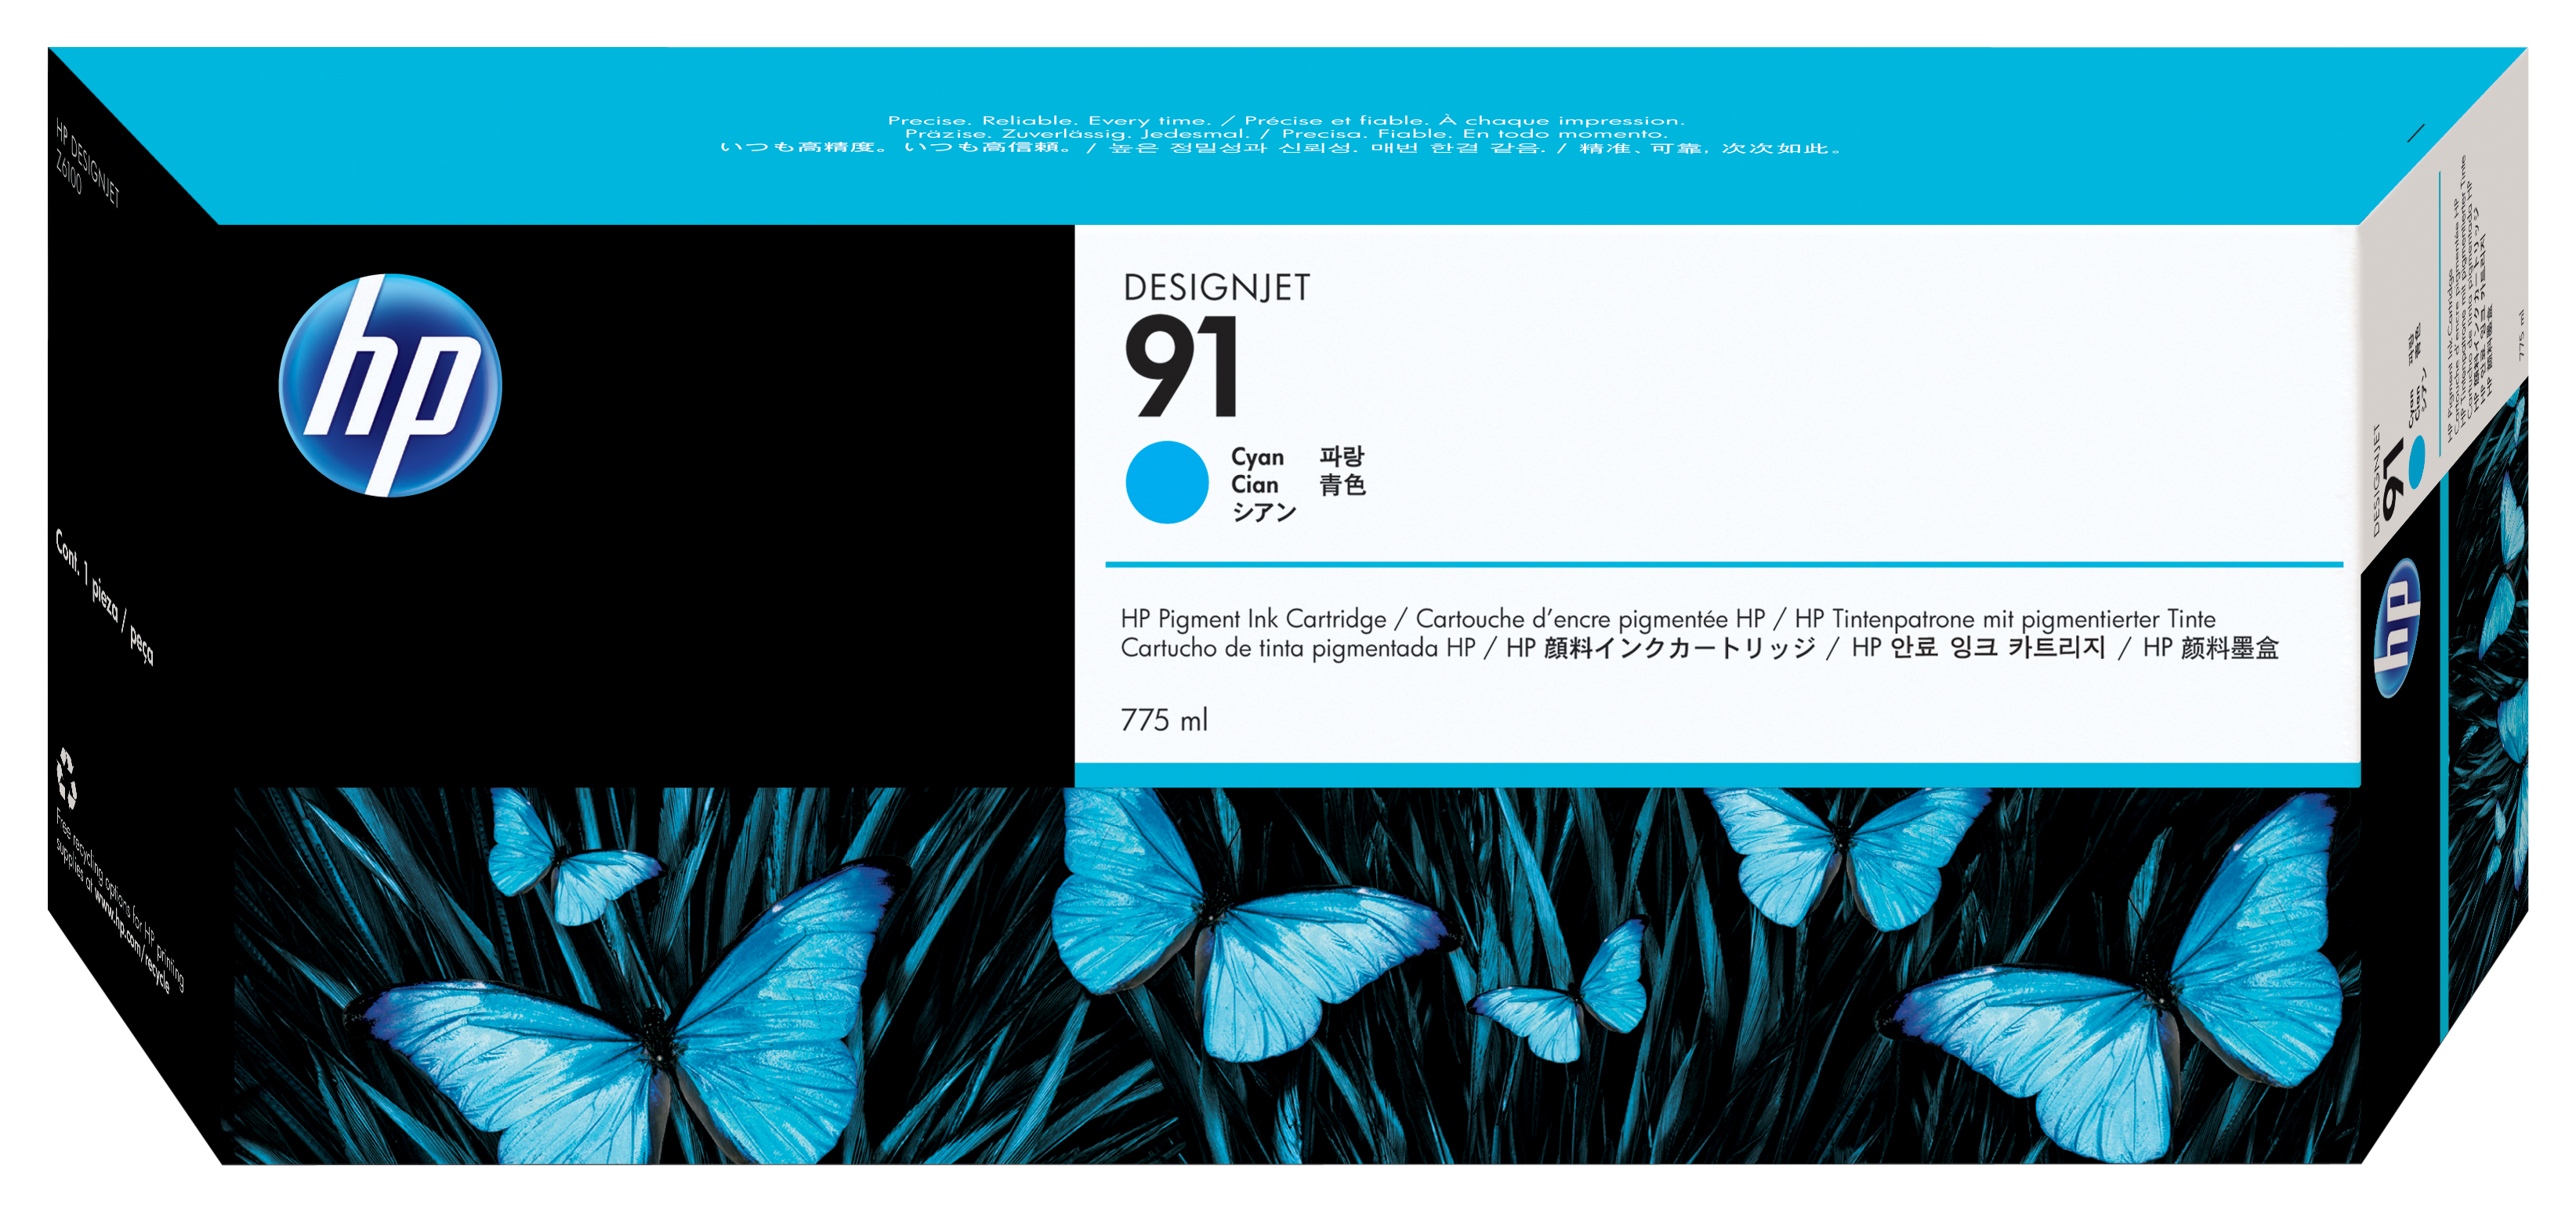 HP 91 775 ml pigmentinktcartridges voor DesignJet, cyaan single pack / cyaan